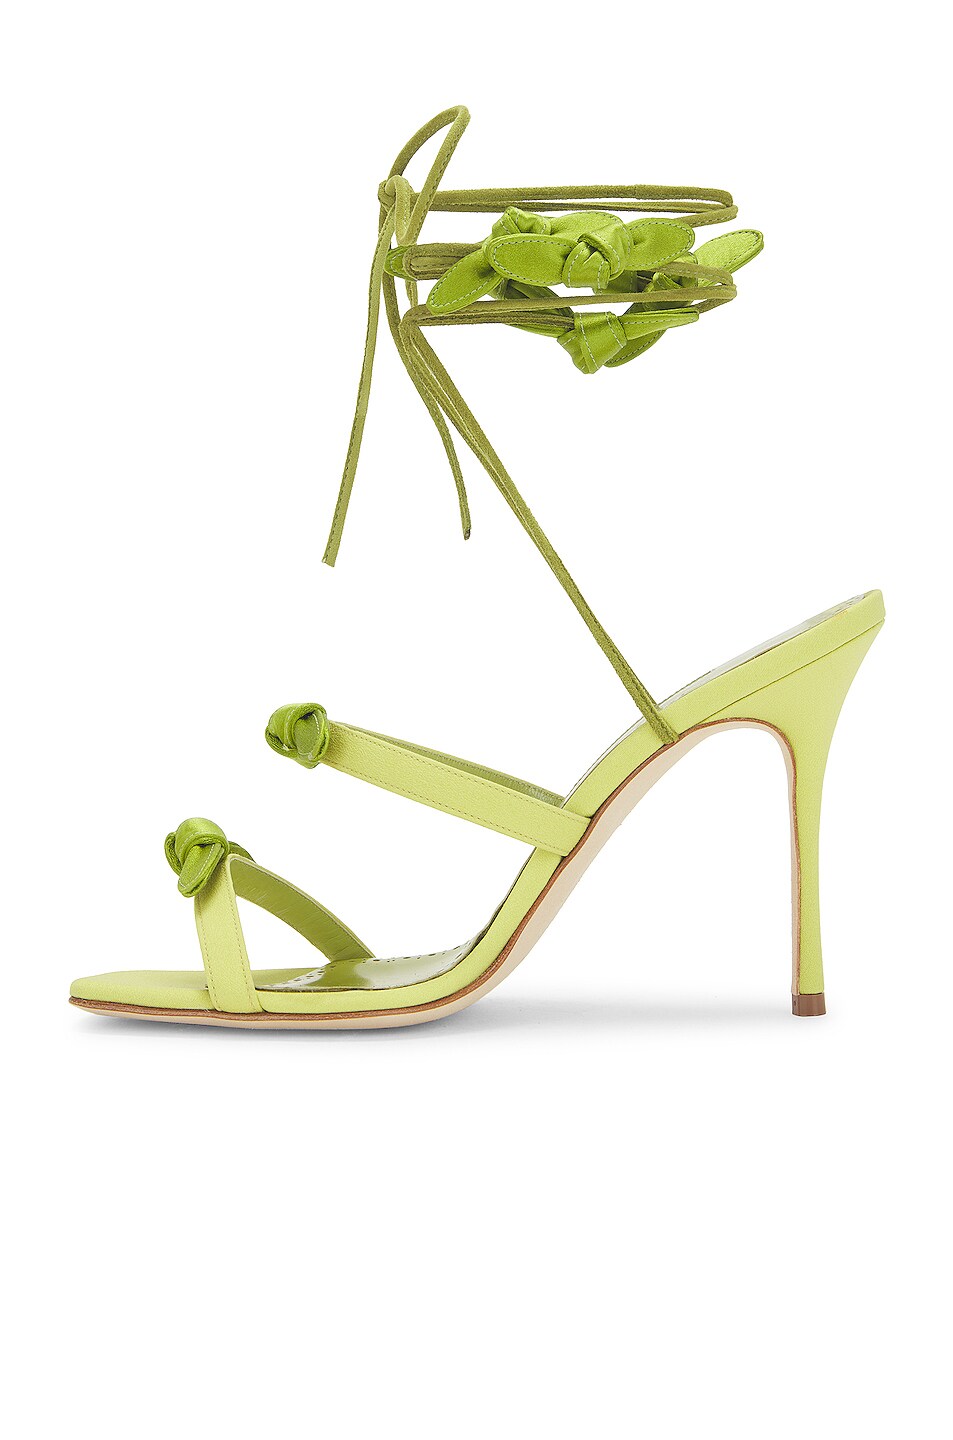 Manolo Blahnik Crepe de Chine Fiocco 105 Sandal in Bright Green | FWRD